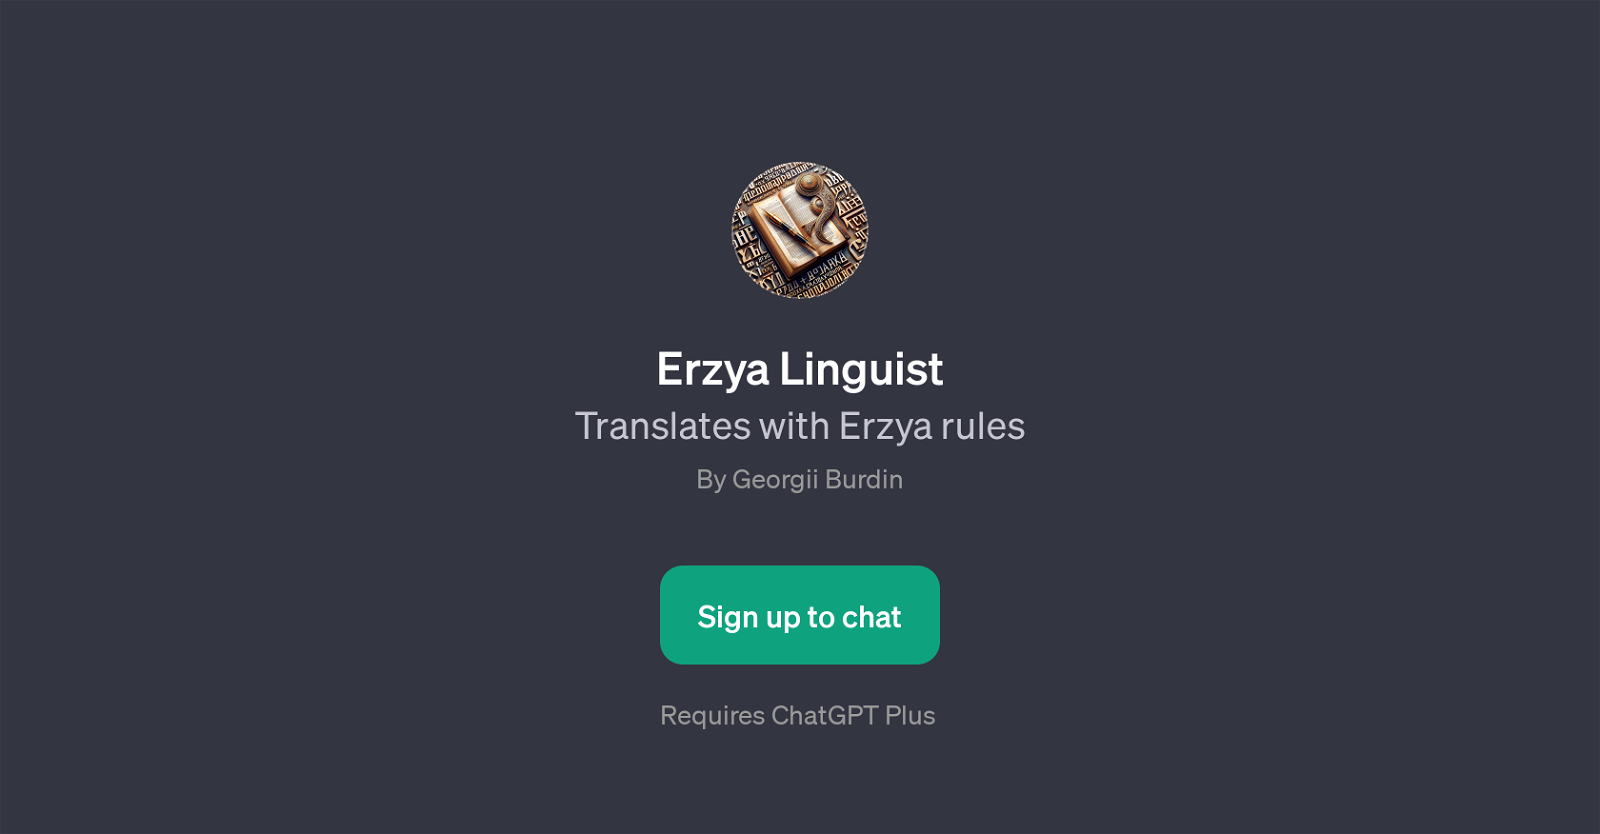 Erzya Linguist website